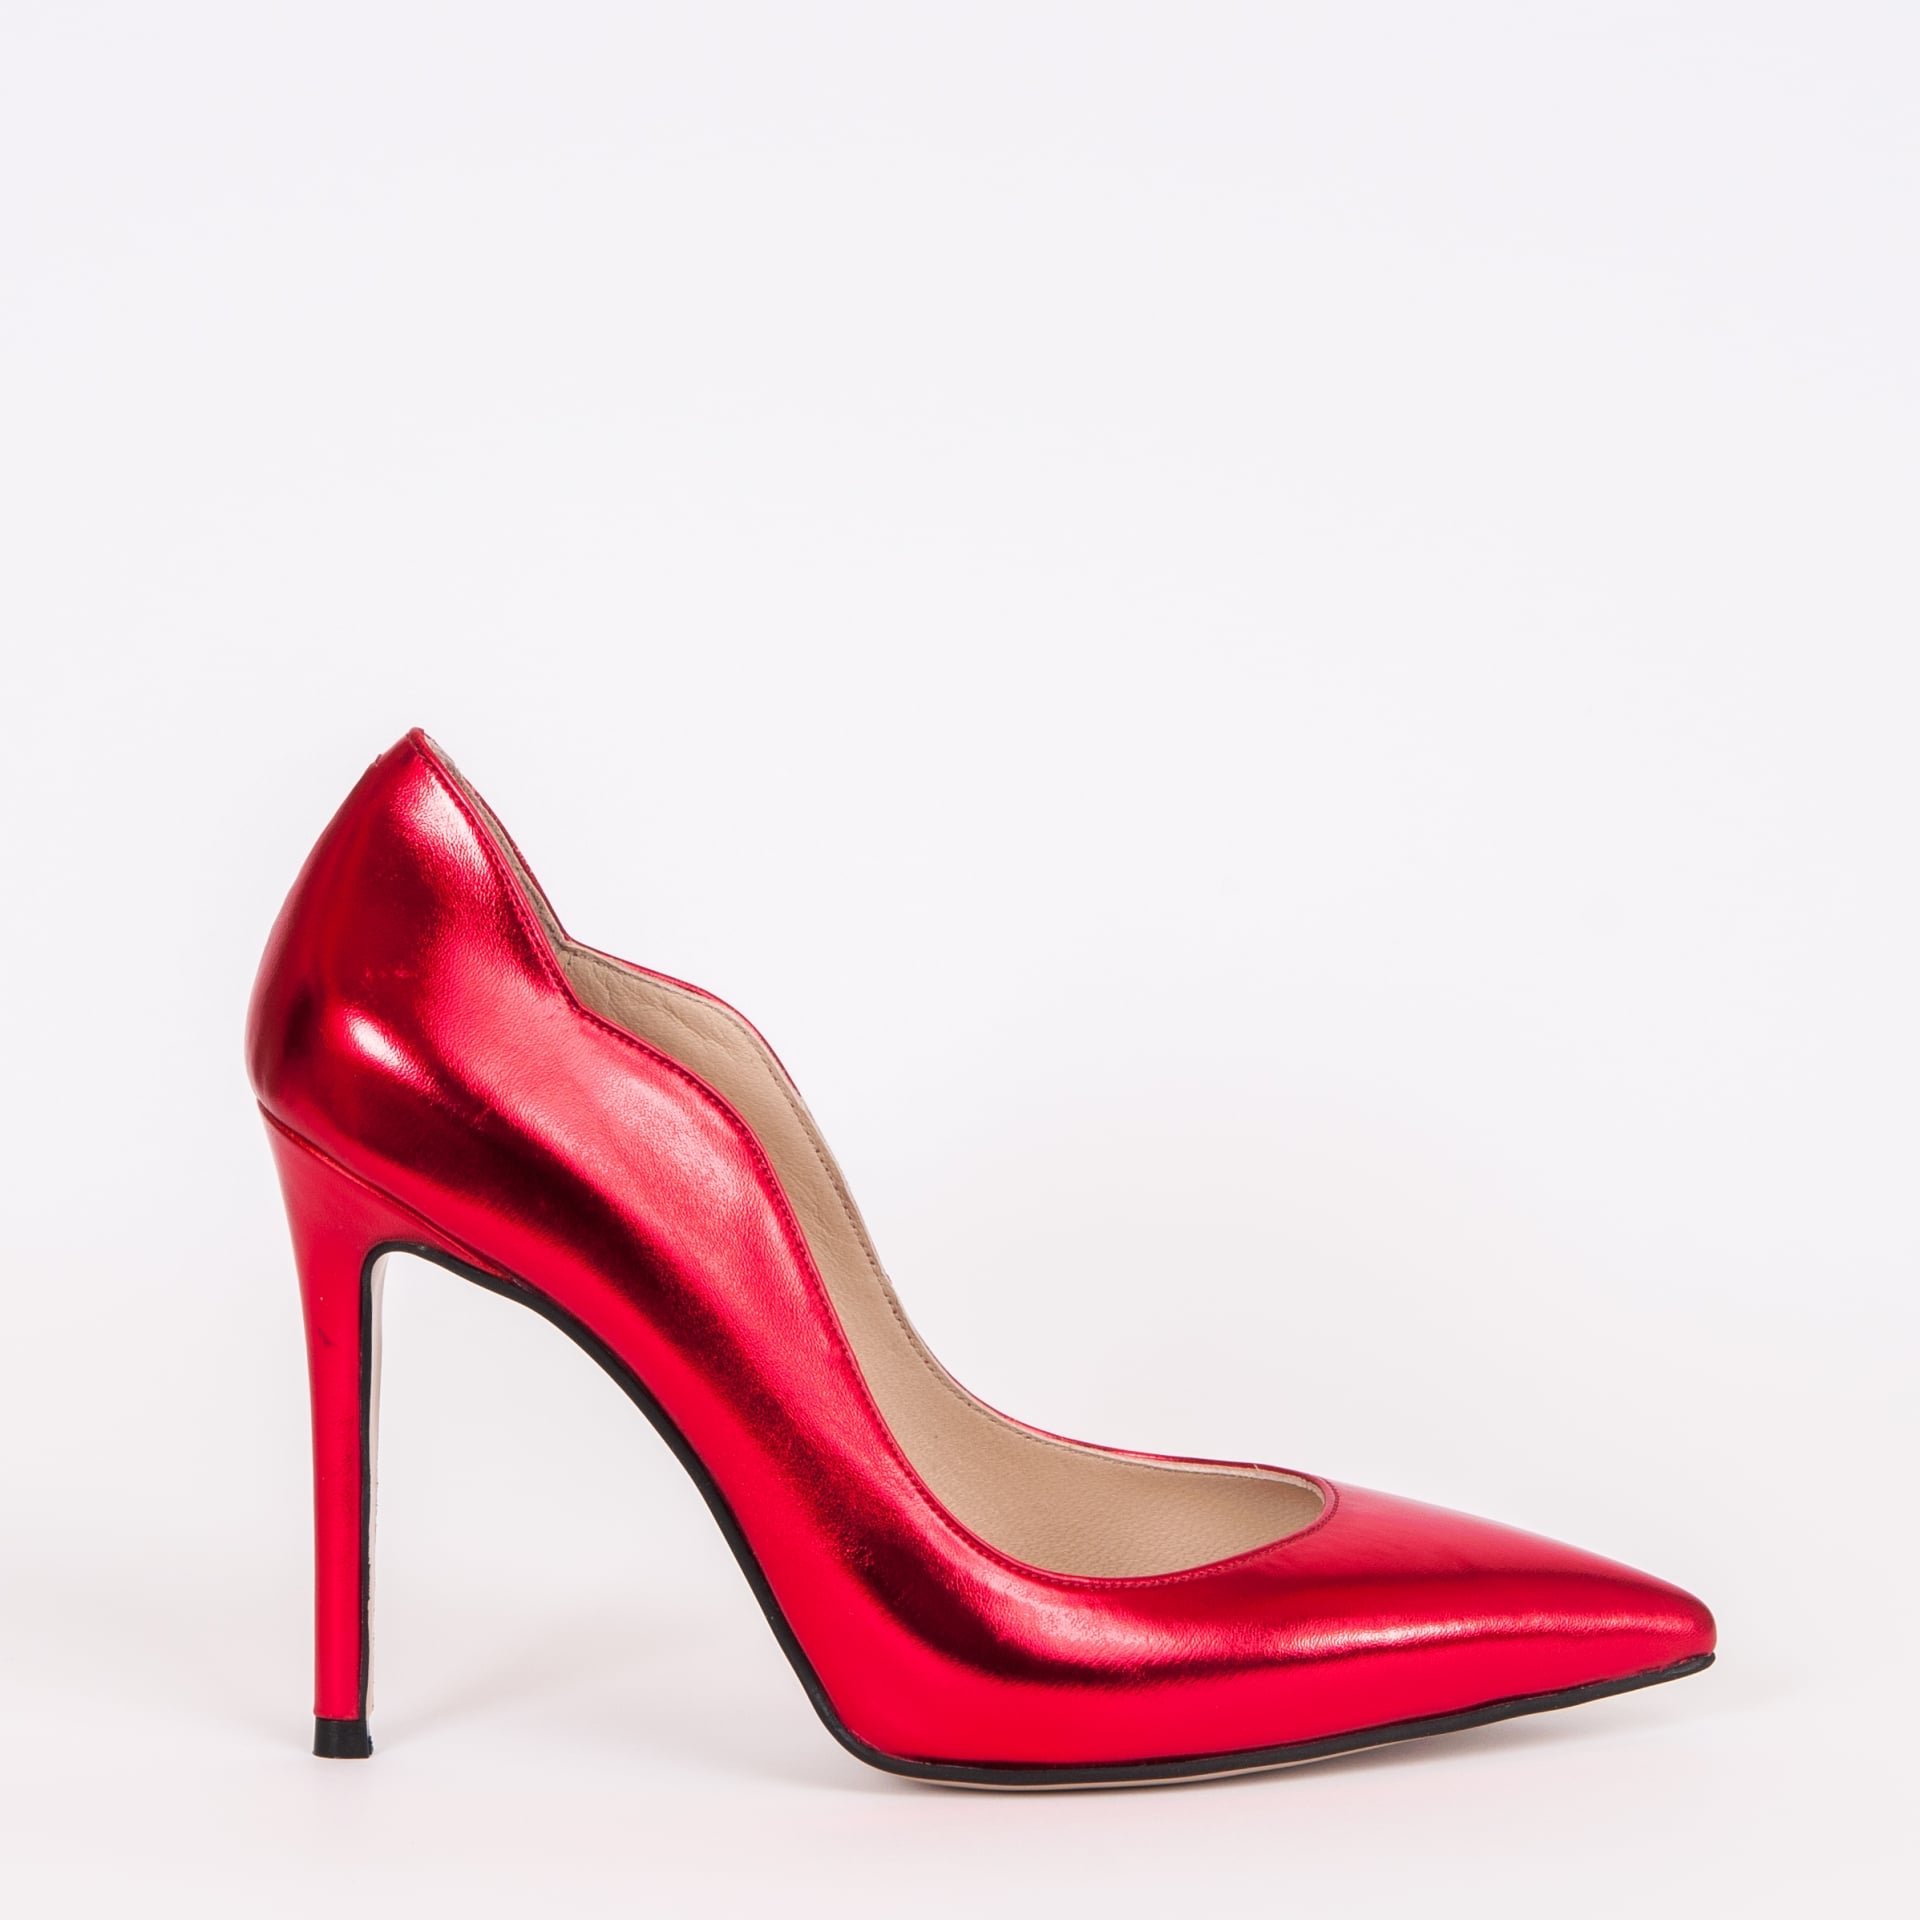 Дамски обувки LOVE NEON цвят червен 105 мм.